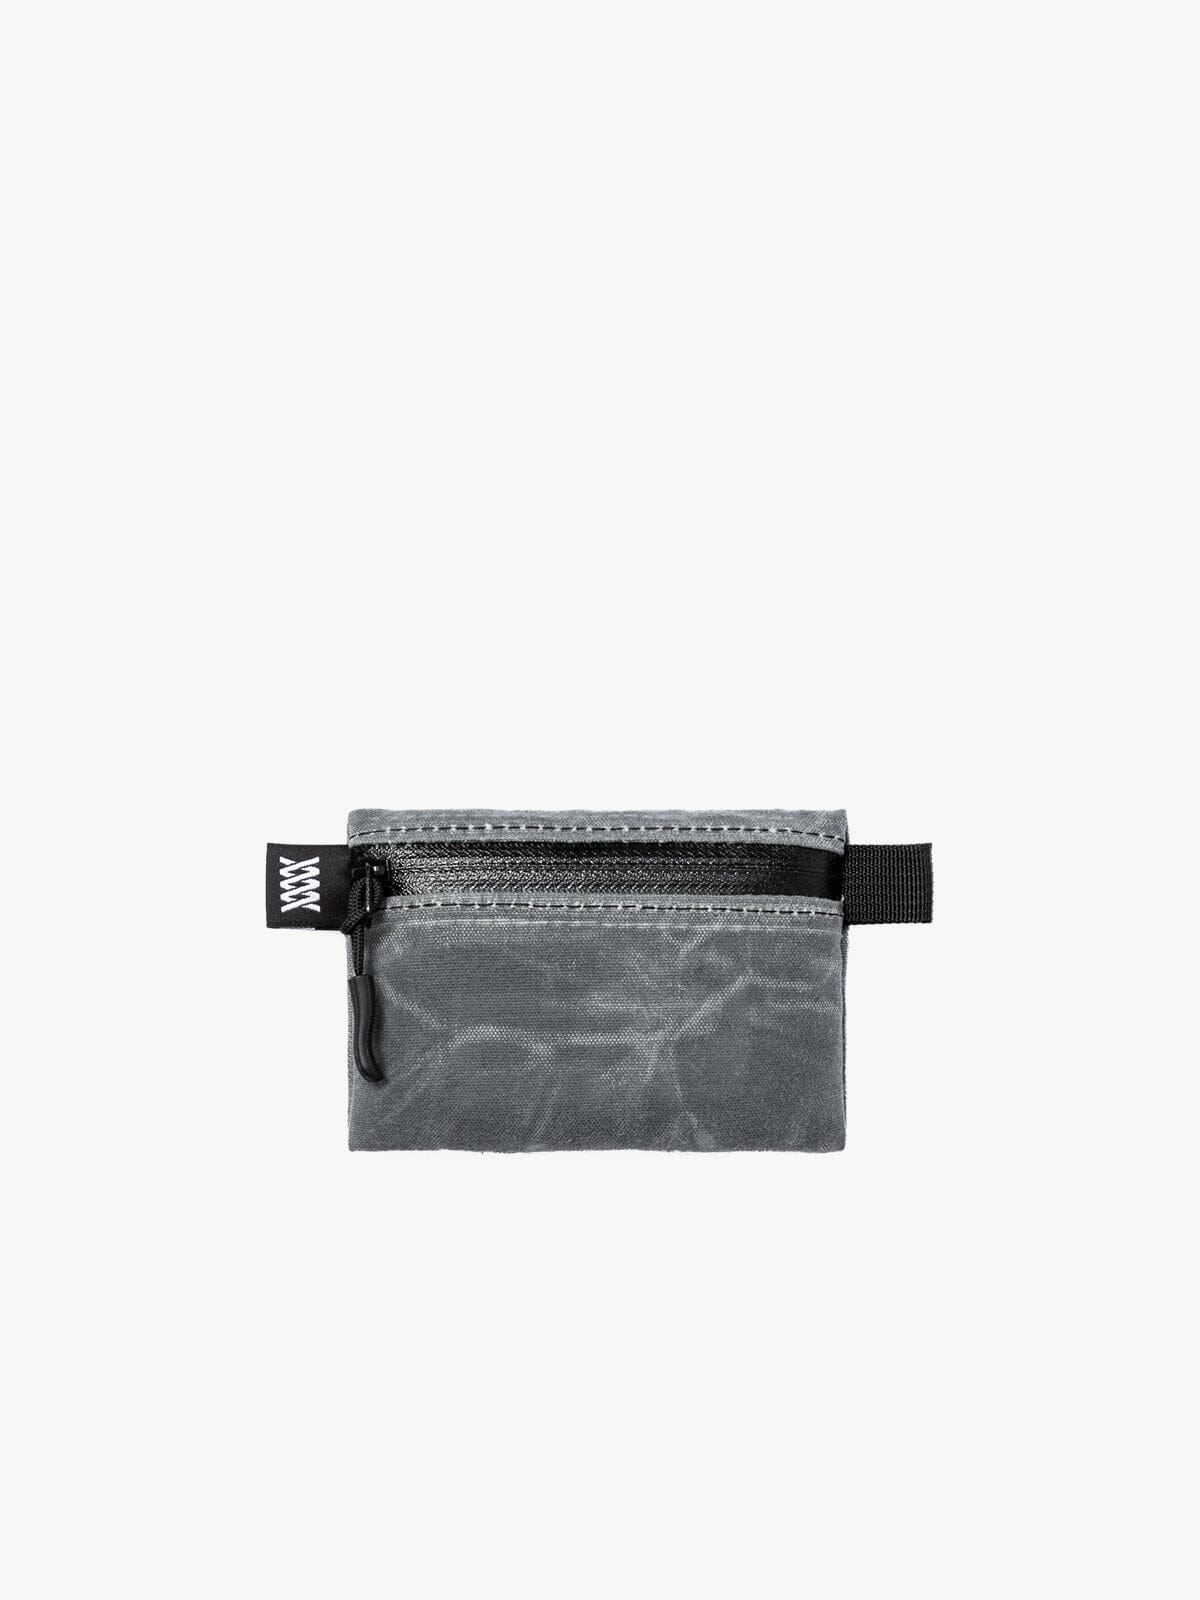 Waxed Canvas Wallet & Utility Pouch by Mission Workshop - Säänkestävät laukut ja tekniset vaatteet - San Francisco & Los Angeles - Rakennettu kestämään - ikuinen takuu